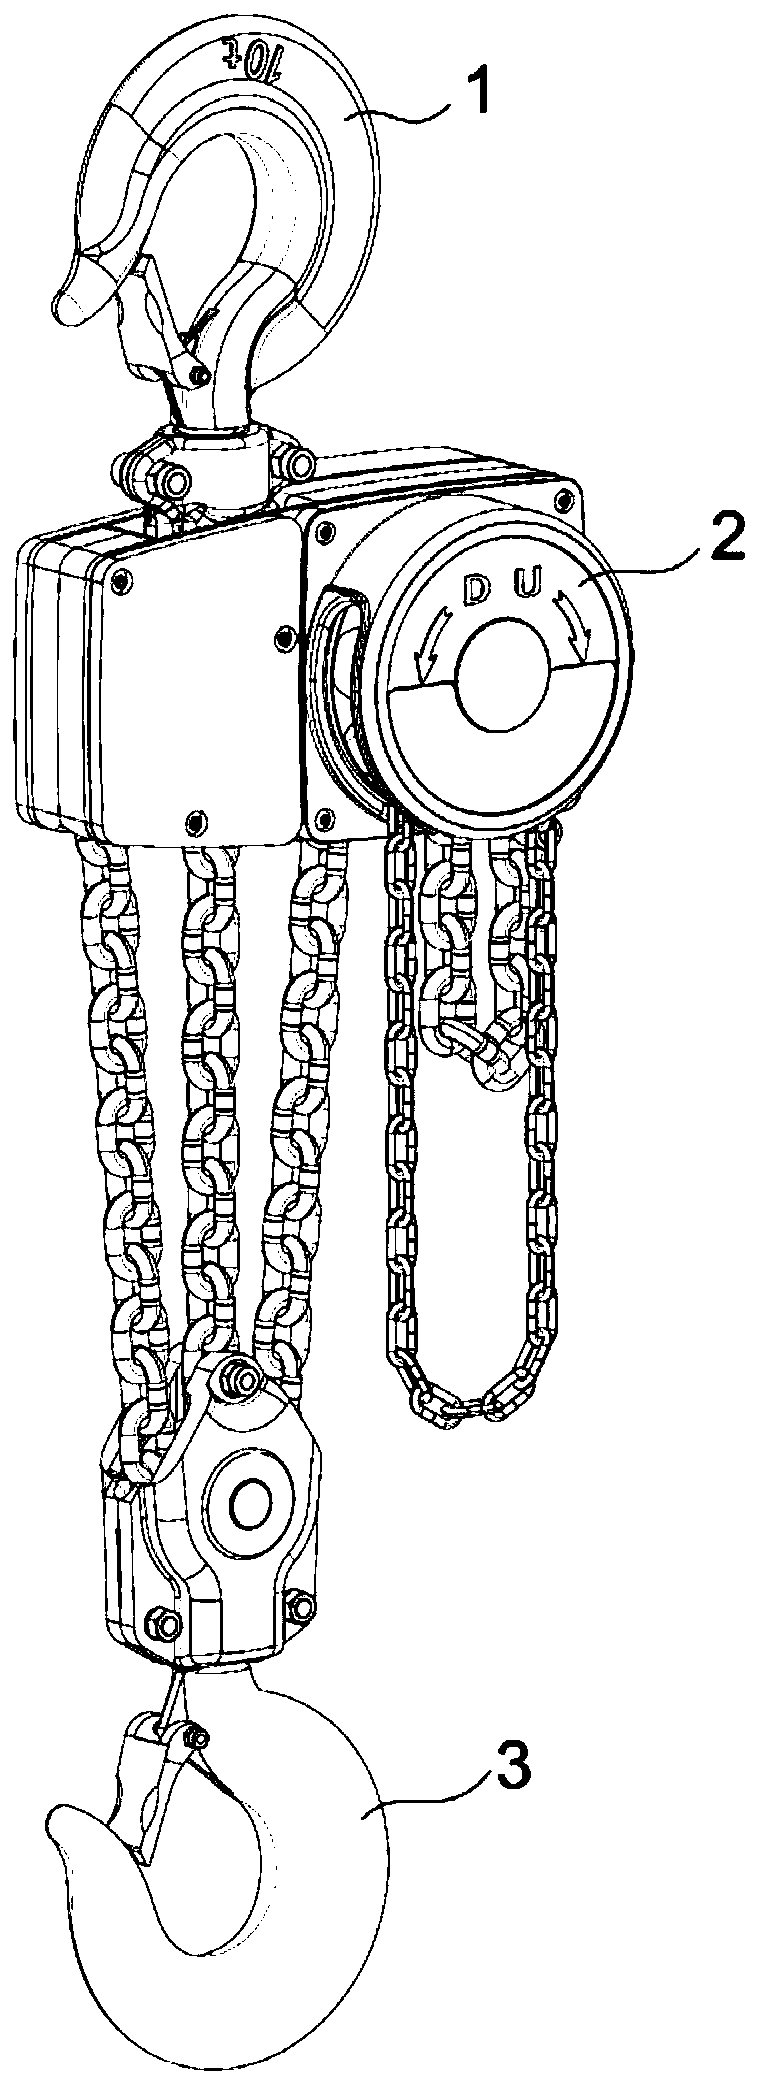 A multi-row chain chain hoist